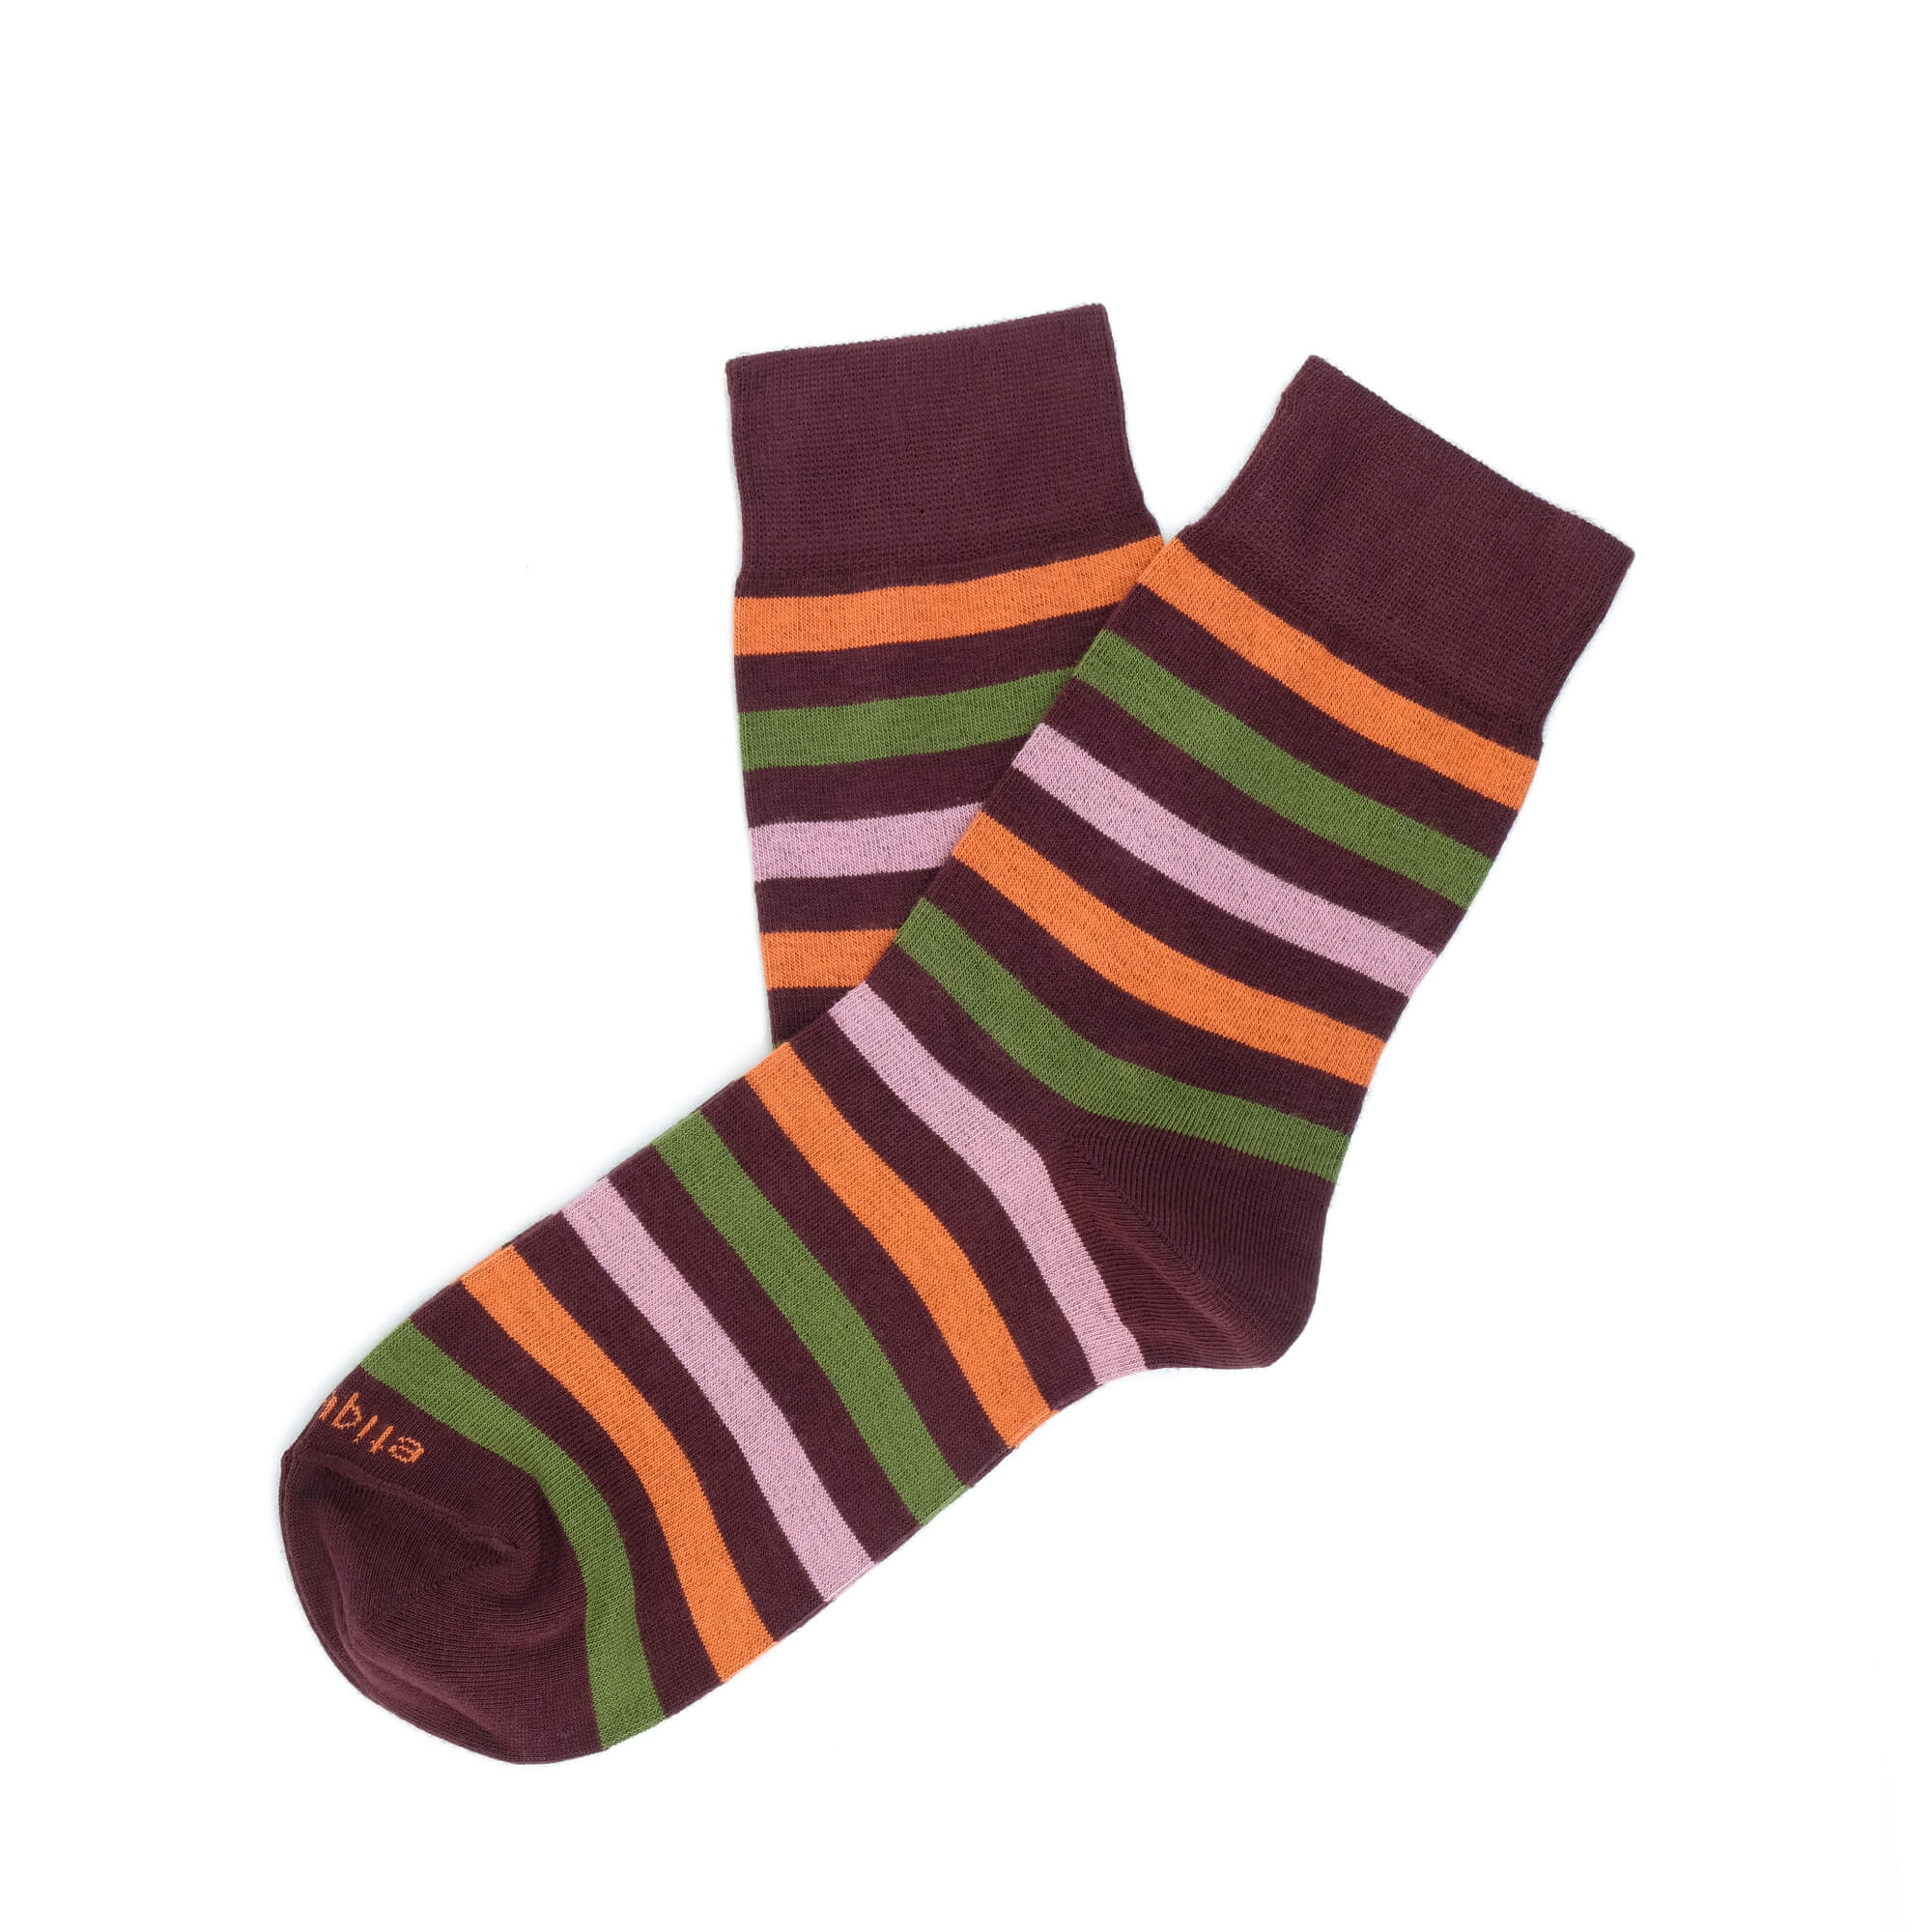 Womens Socks - Crosswalk Stripes Women's Socks - Bordeaux⎪Etiquette Clothiers